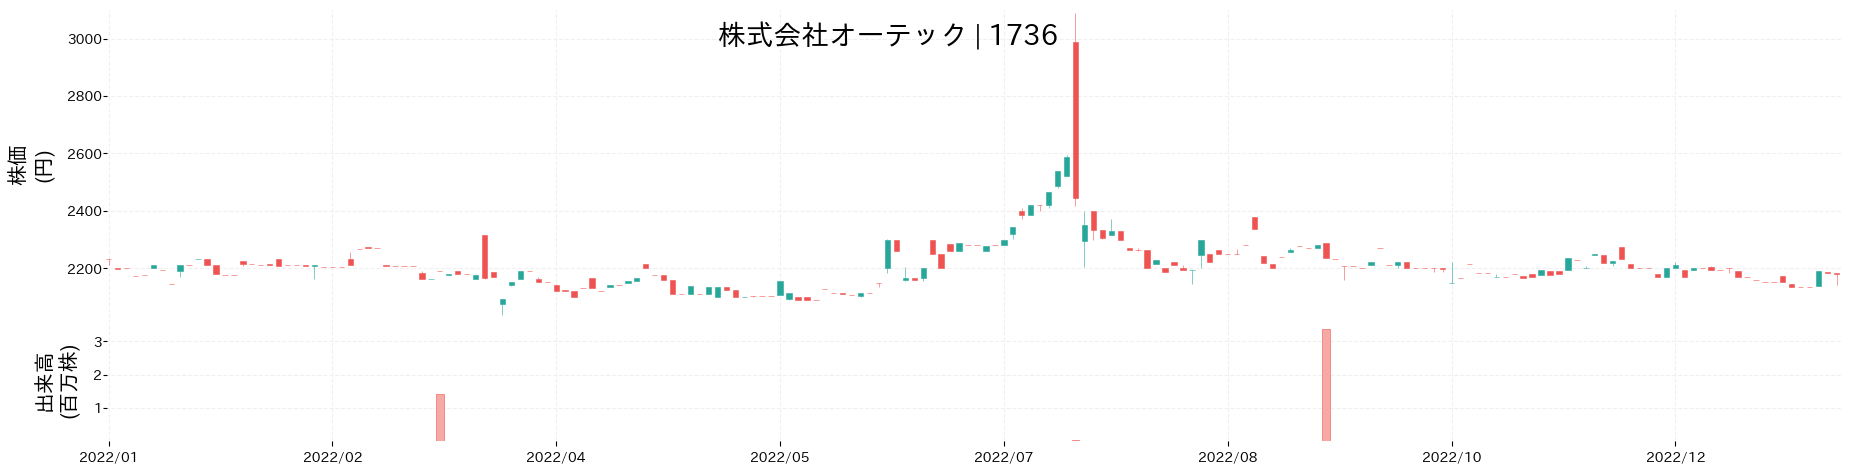 オーテックの株価推移(2022)